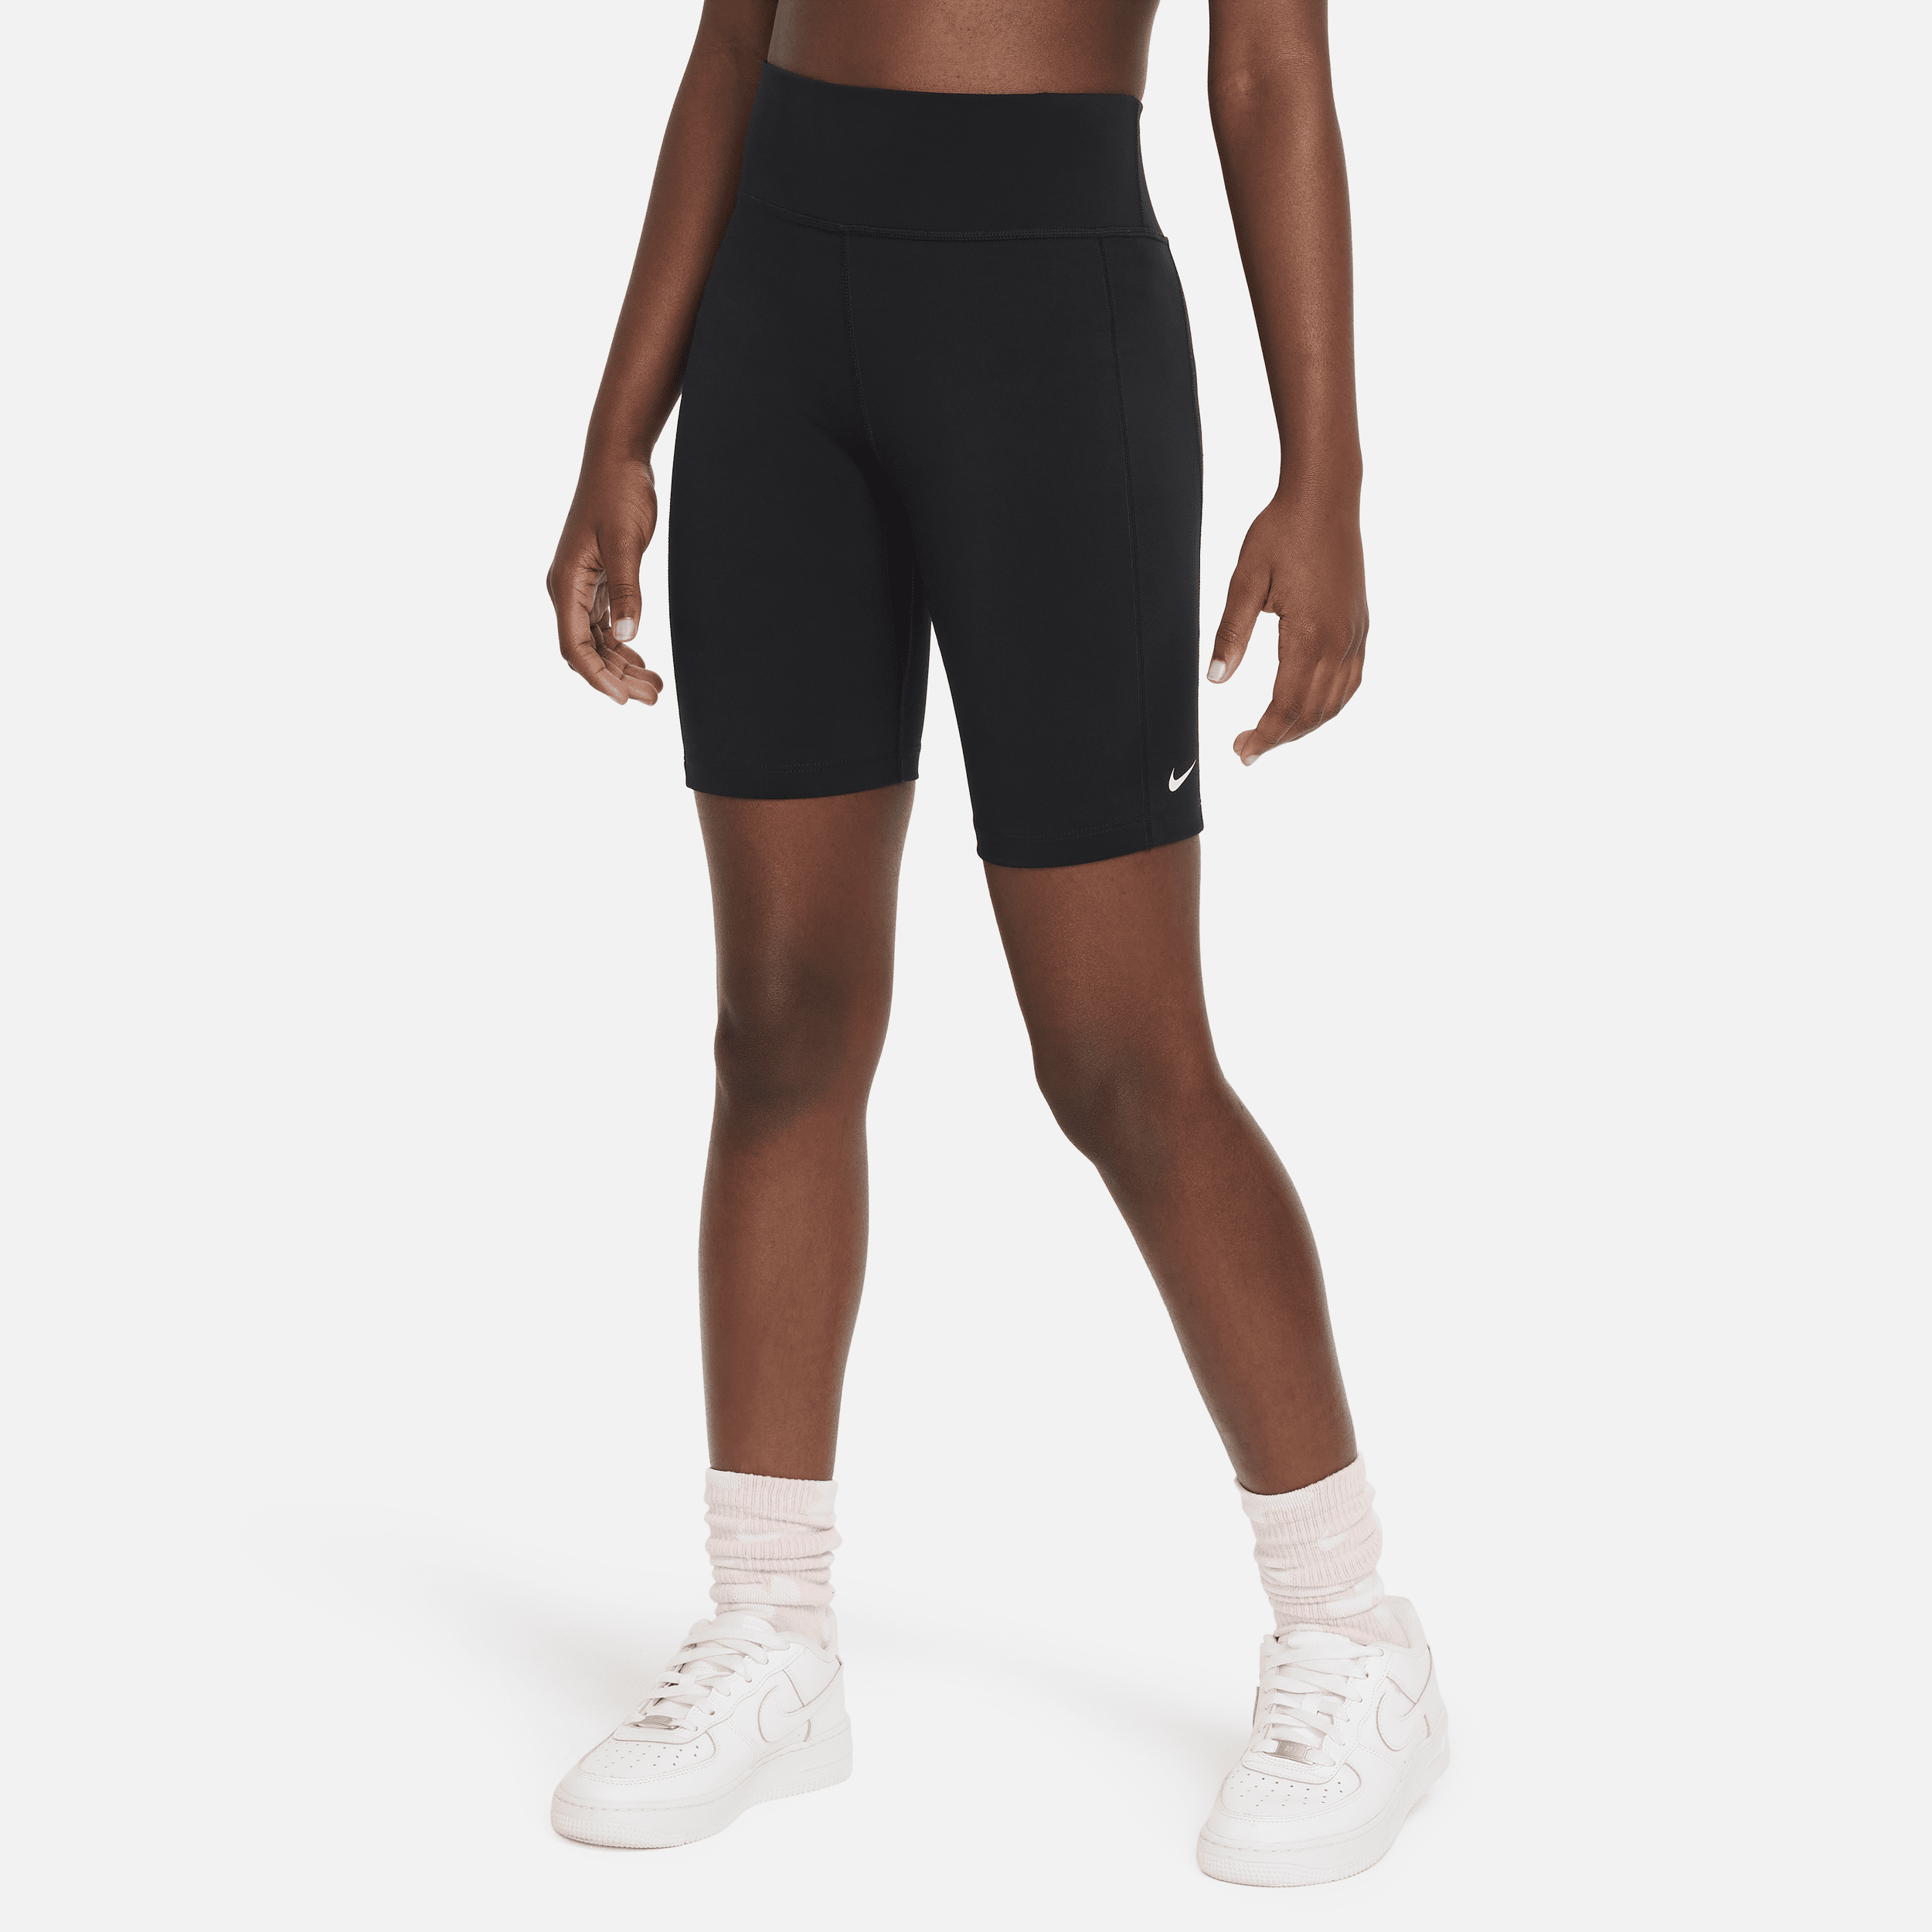 Nike One Leak Protection: Period Pantalón corto de ciclismo de talle alto de 18 cm - Niña - Negro